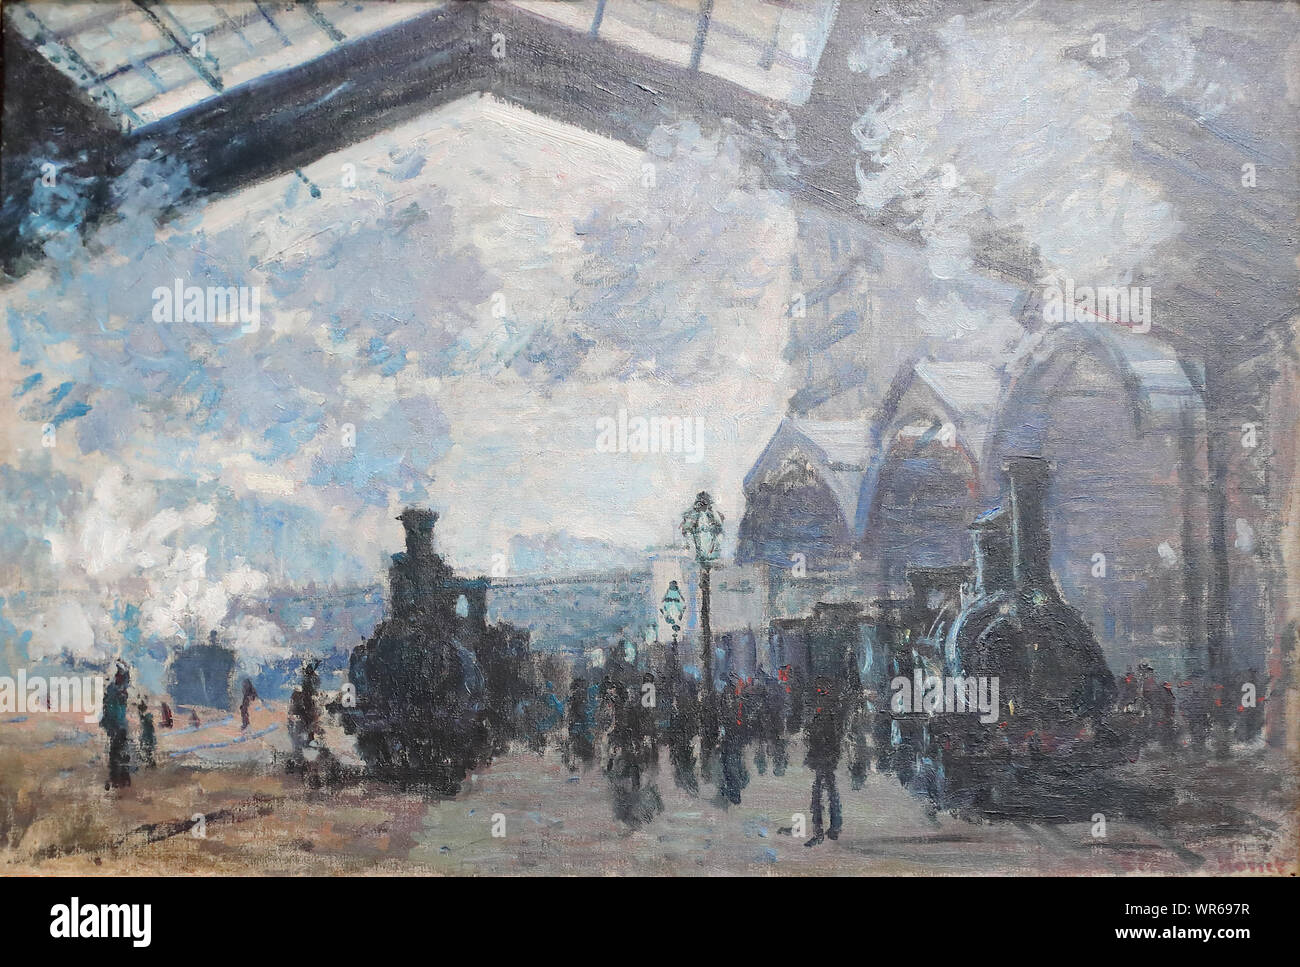 La Gare St-Lazare par peintre impressionniste français Claude Monet à la National Gallery, Londres, UK Banque D'Images